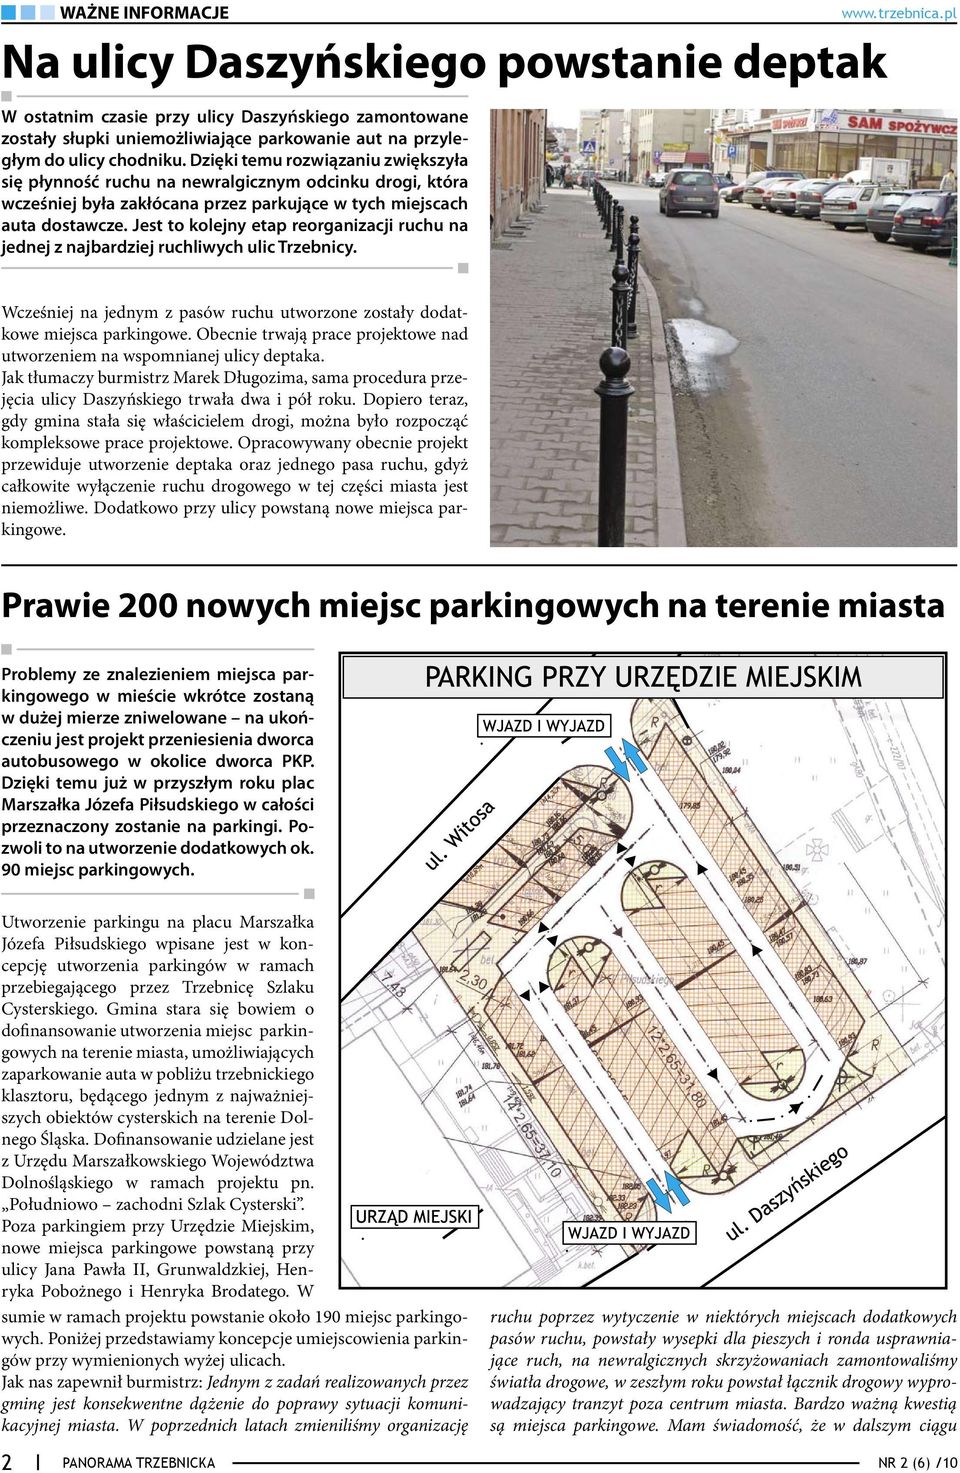 Jest to kolejny etap reorganizacji ruchu na jednej z najbardziej ruchliwych ulic Trzebnicy. Wcześniej na jednym z pasów ruchu utworzone zostały dodatkowe miejsca parkingowe.